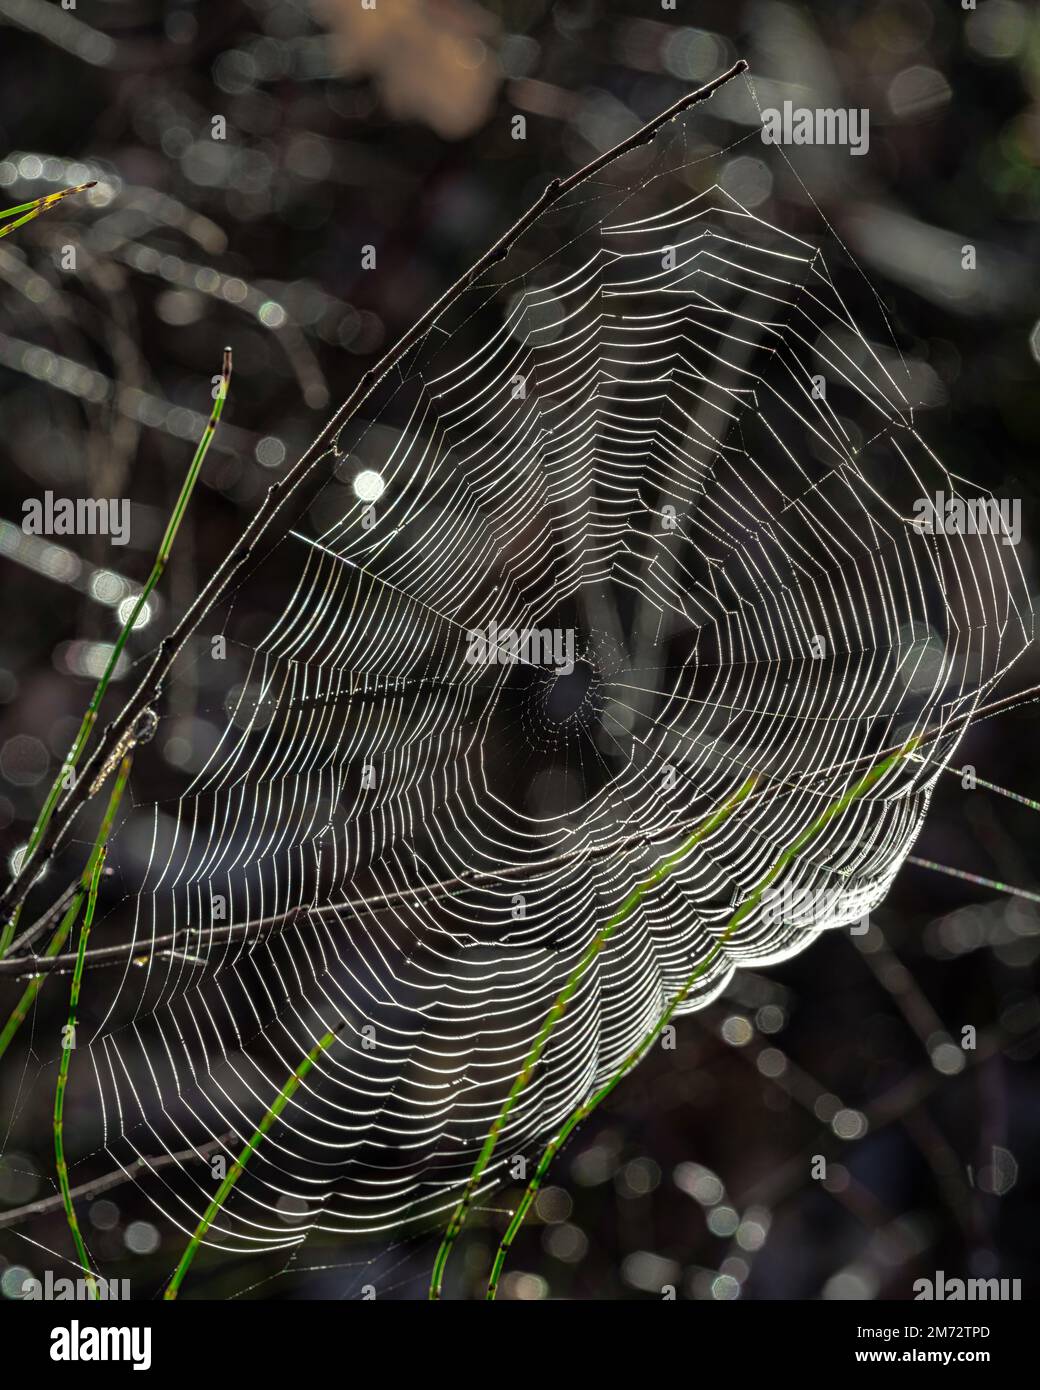 Konzentrische Kreise eines Spinnennetzes, das zwischen Grashalmen mit Regentropfen liegt. Abruzzen, Italien, Europa Stockfoto